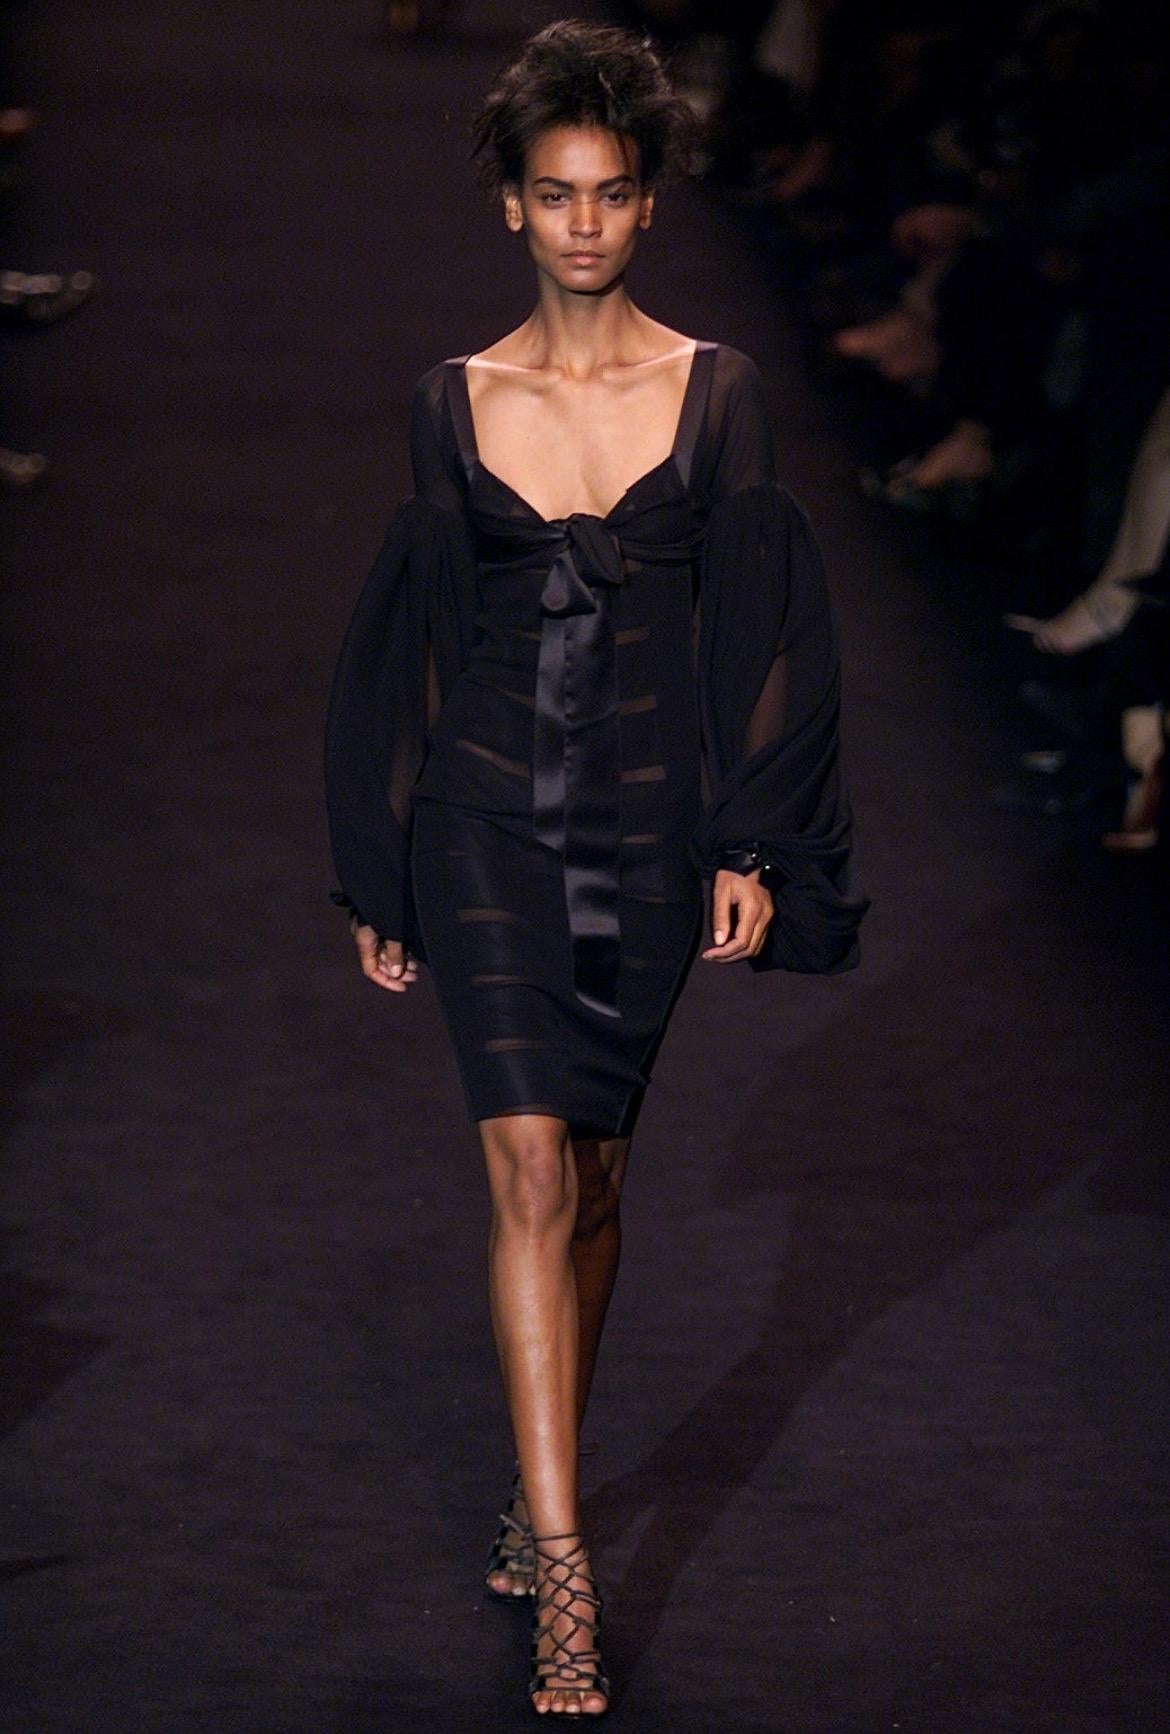 Voici une magnifique robe noire à manches de poète Yves Saint Laurent Rive Gauche, dessinée par Tom Ford. Issue de la collection Automne/Hiver 2002, cette robe a fait ses débuts sur le défilé de la saison en tant que look 37 porté par Liya Kebede.